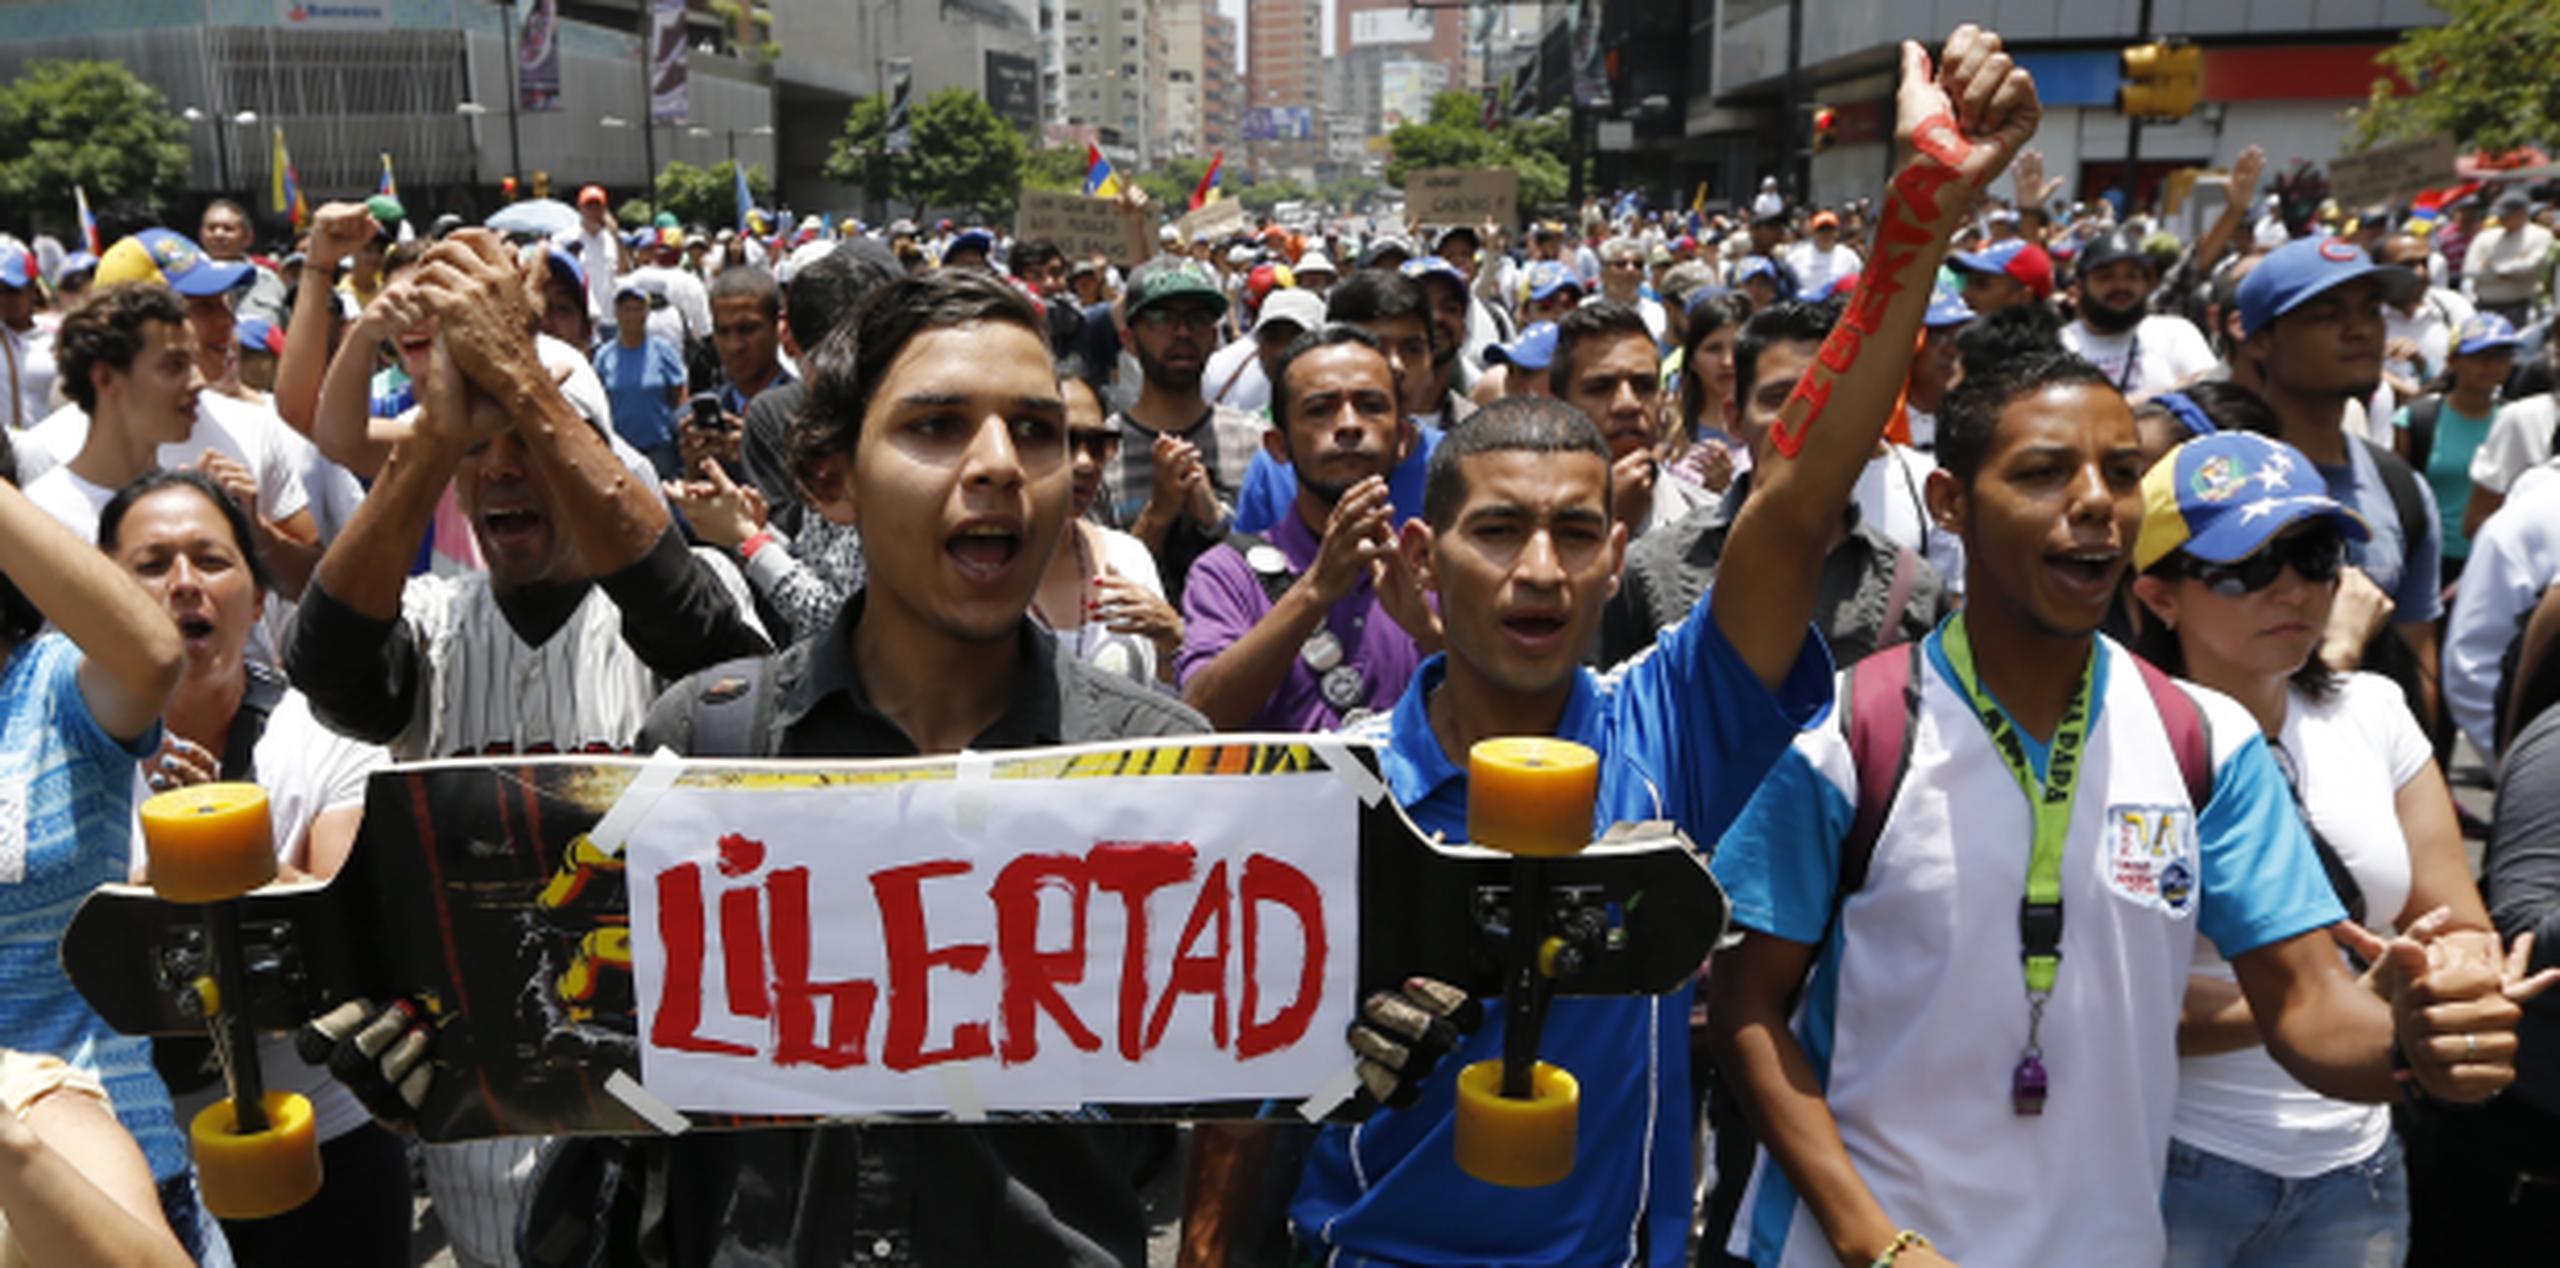 Venezuela ha vivido en las últimas semanas jornadas de multitudinarias protestas en contra del presidente Maduro que han dejado al menos 20 muertos y decenas de detenidos. (AP/Ariana Cubillos)
